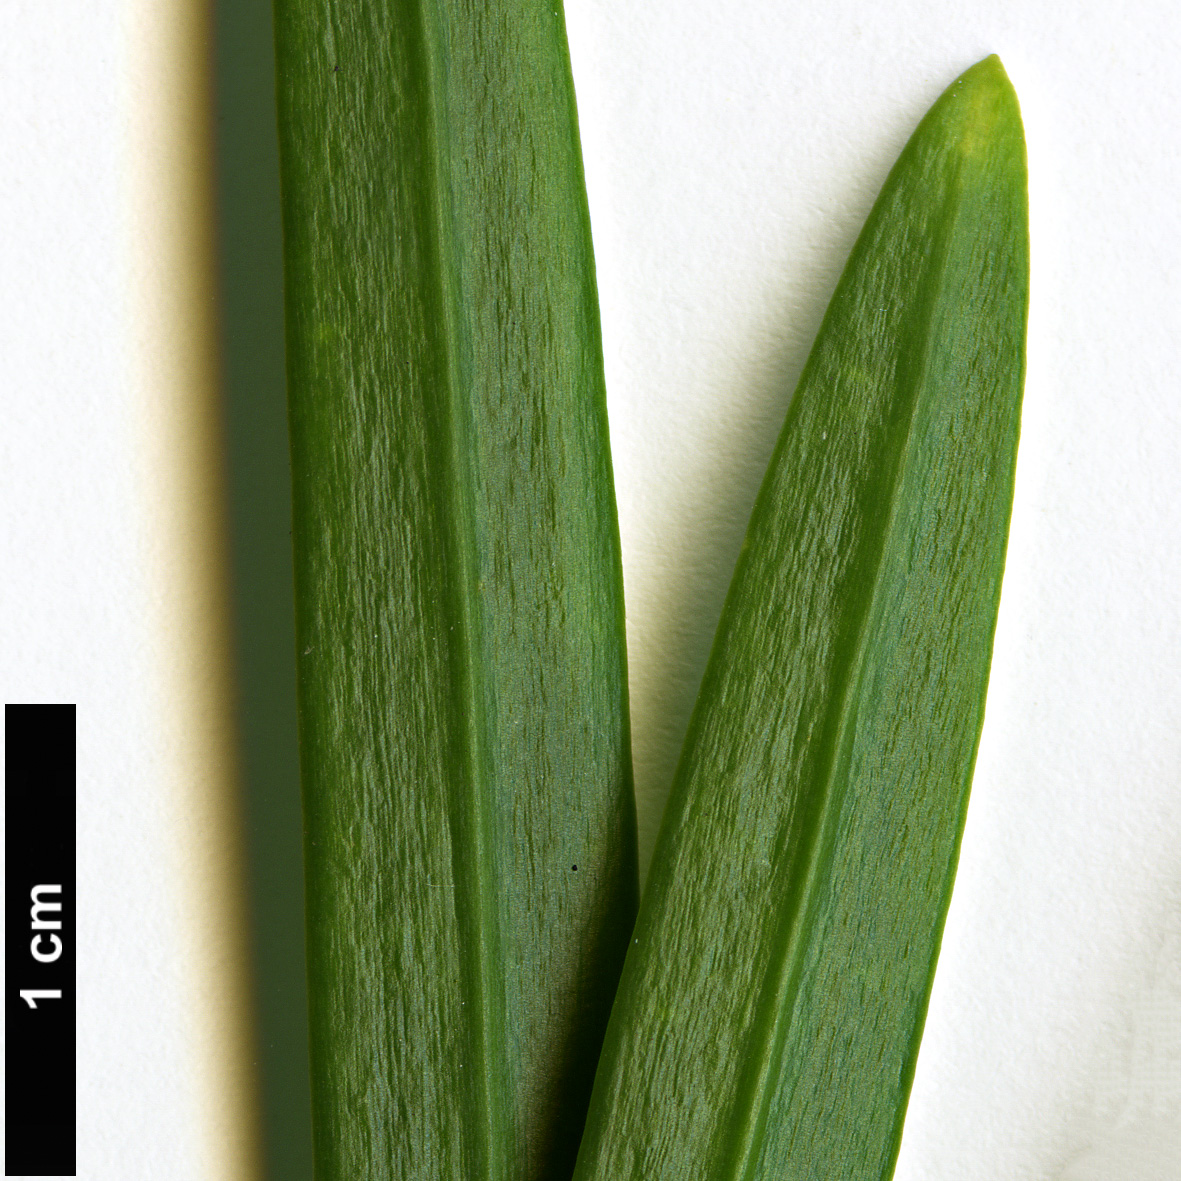 High resolution image: Family: Podocarpaceae - Genus: Podocarpus - Taxon: pilgeri